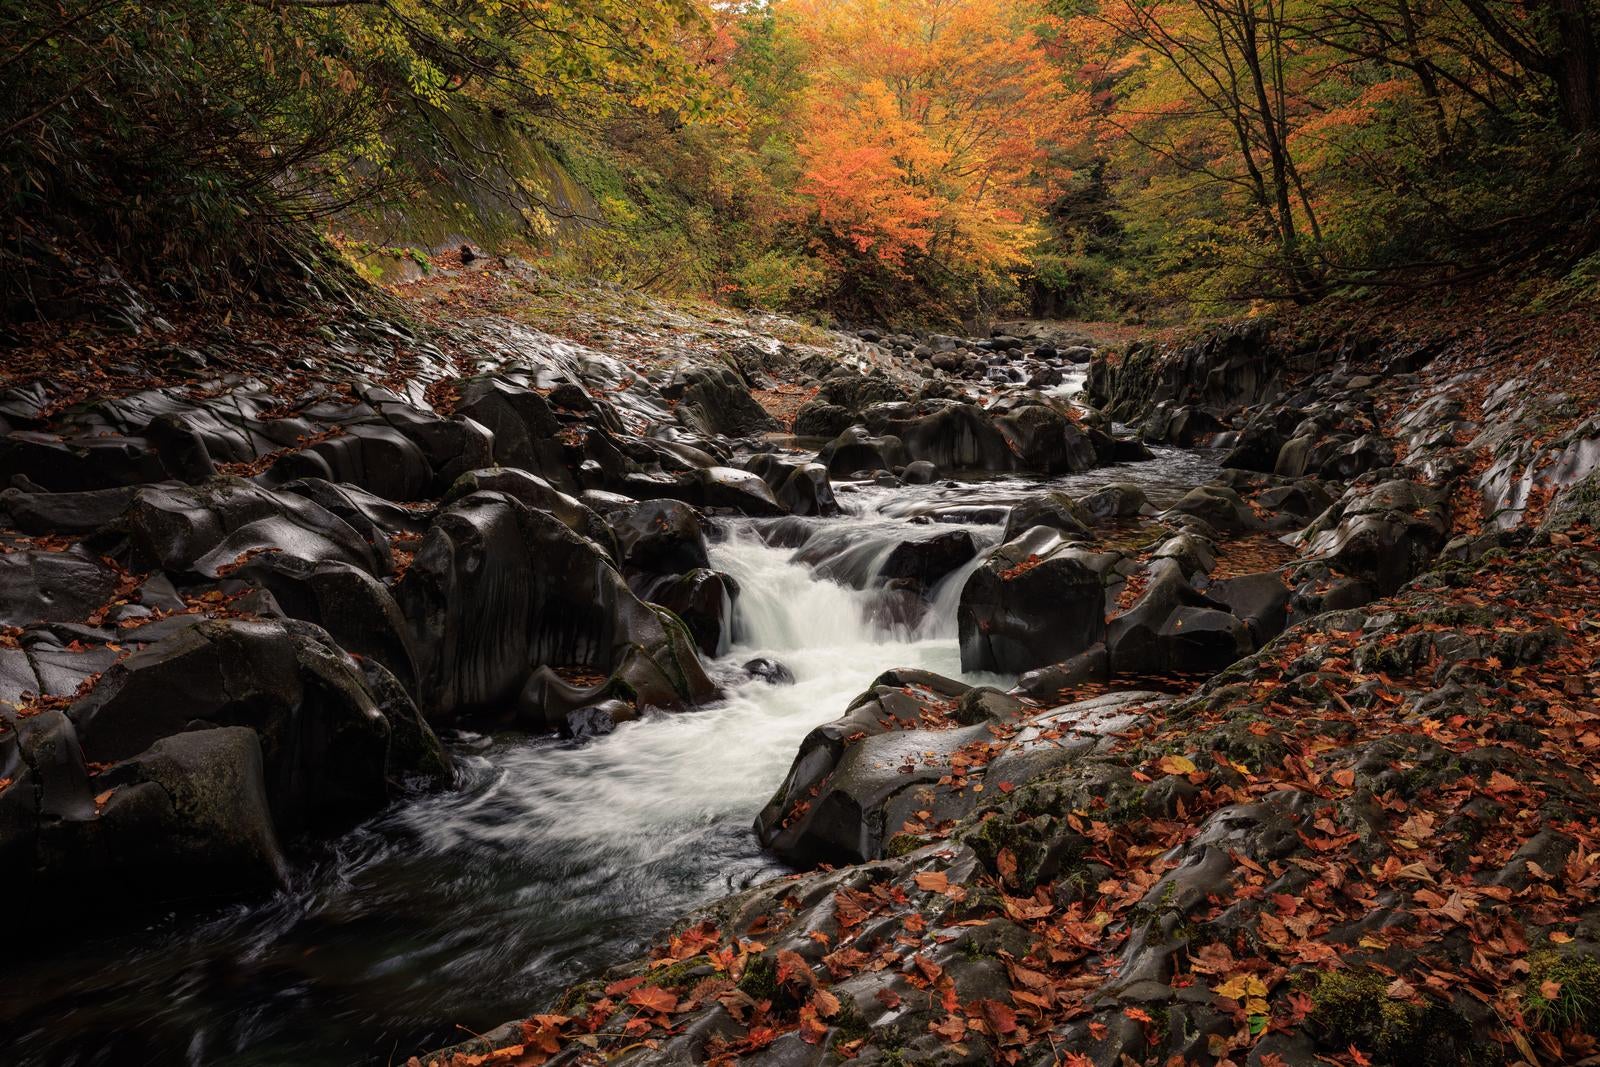 「中津川渓谷の秋景色、紅葉と落ち葉が彩る水の流れ」の写真